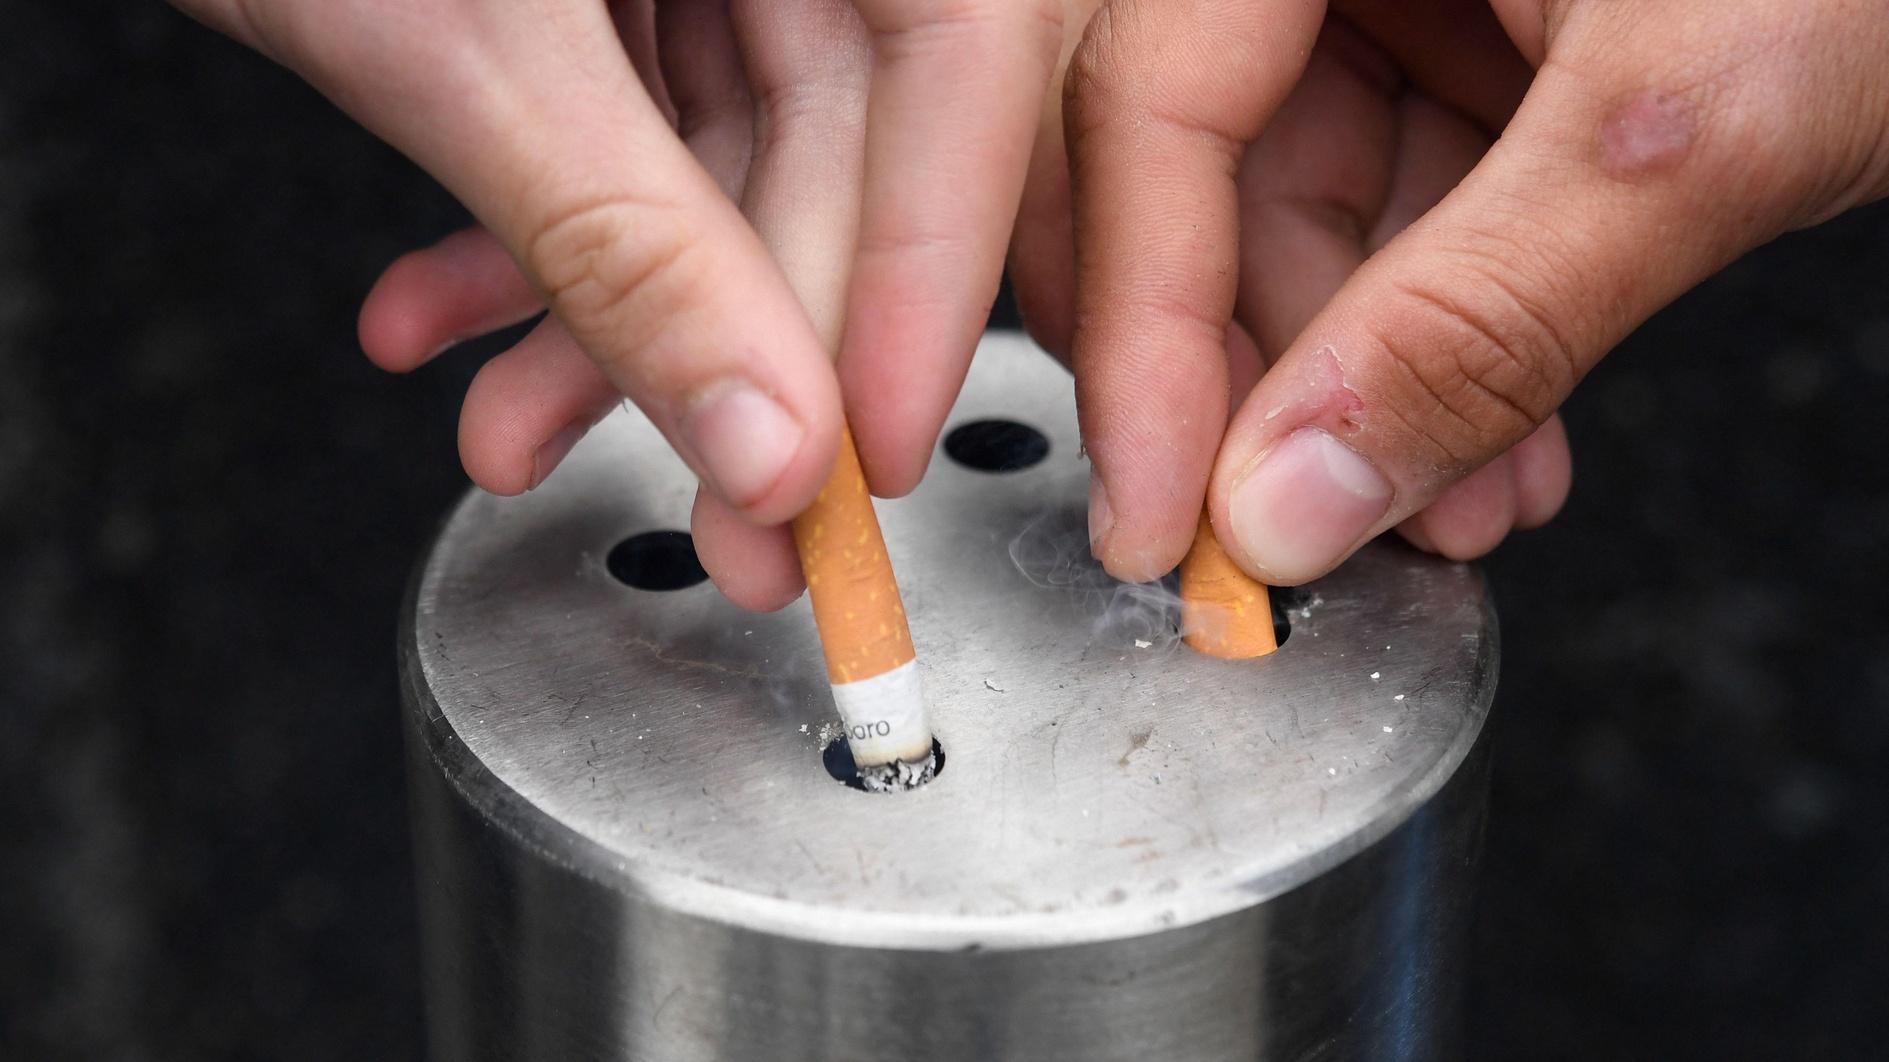 Türkiye staat op de eerste plaats wat betreft gerookte sigaretten: rapport